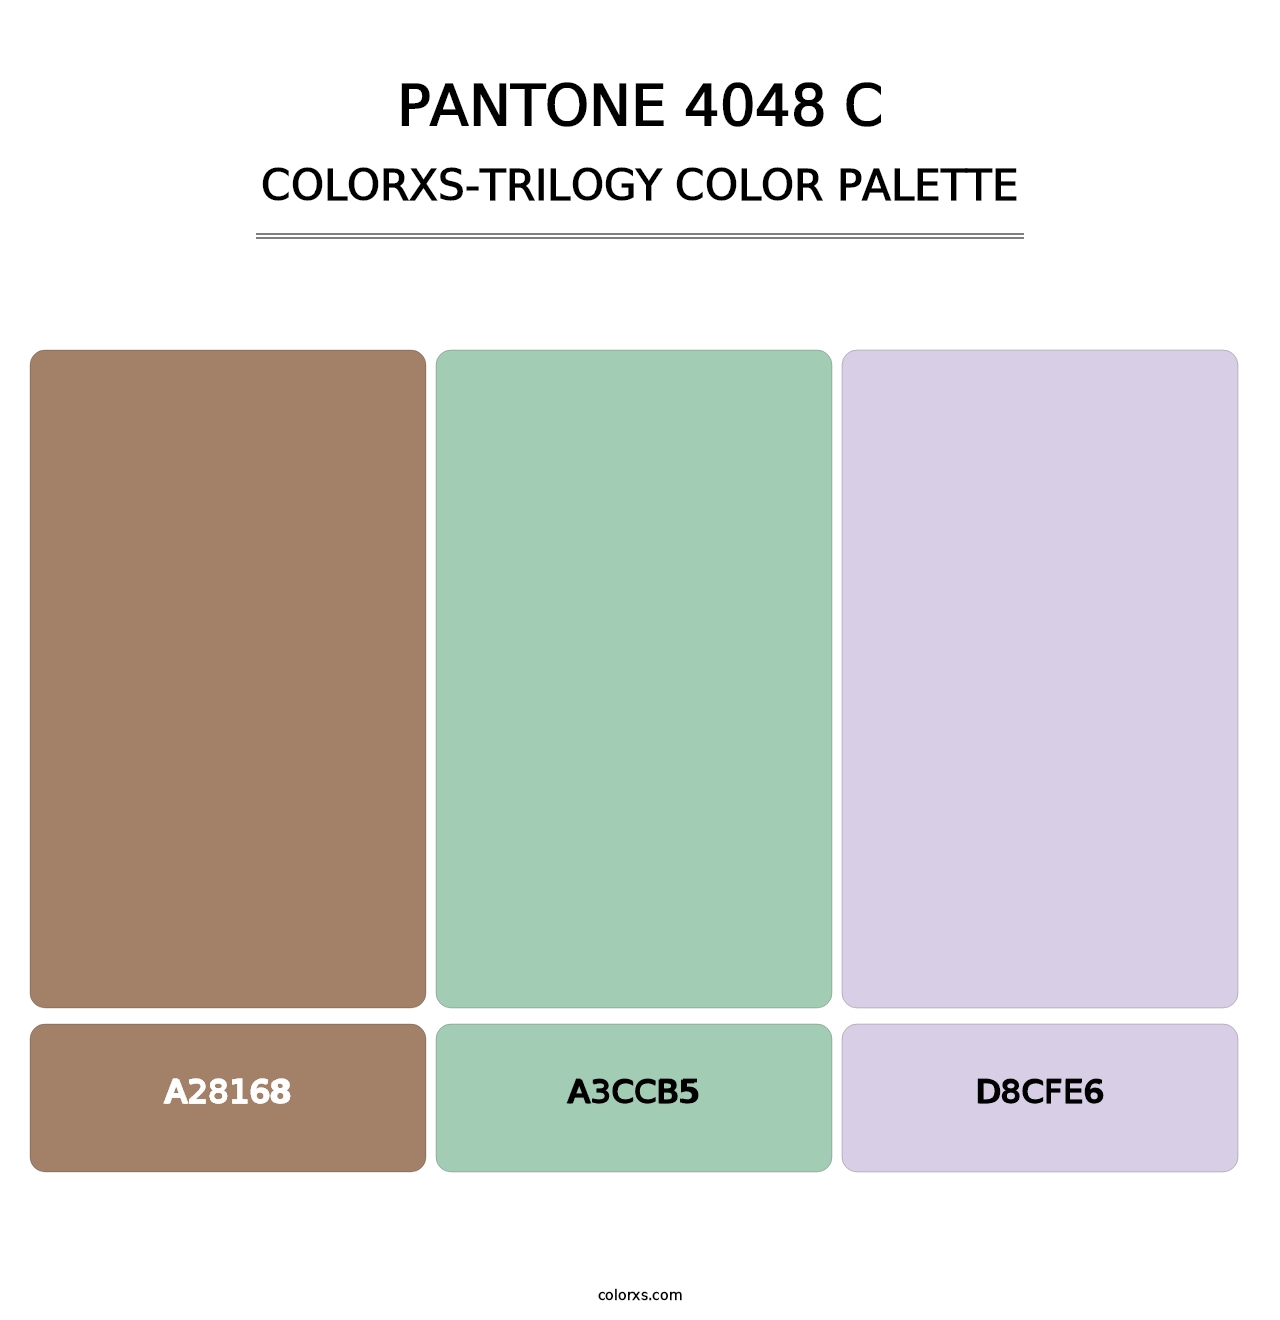 PANTONE 4048 C - Colorxs Trilogy Palette